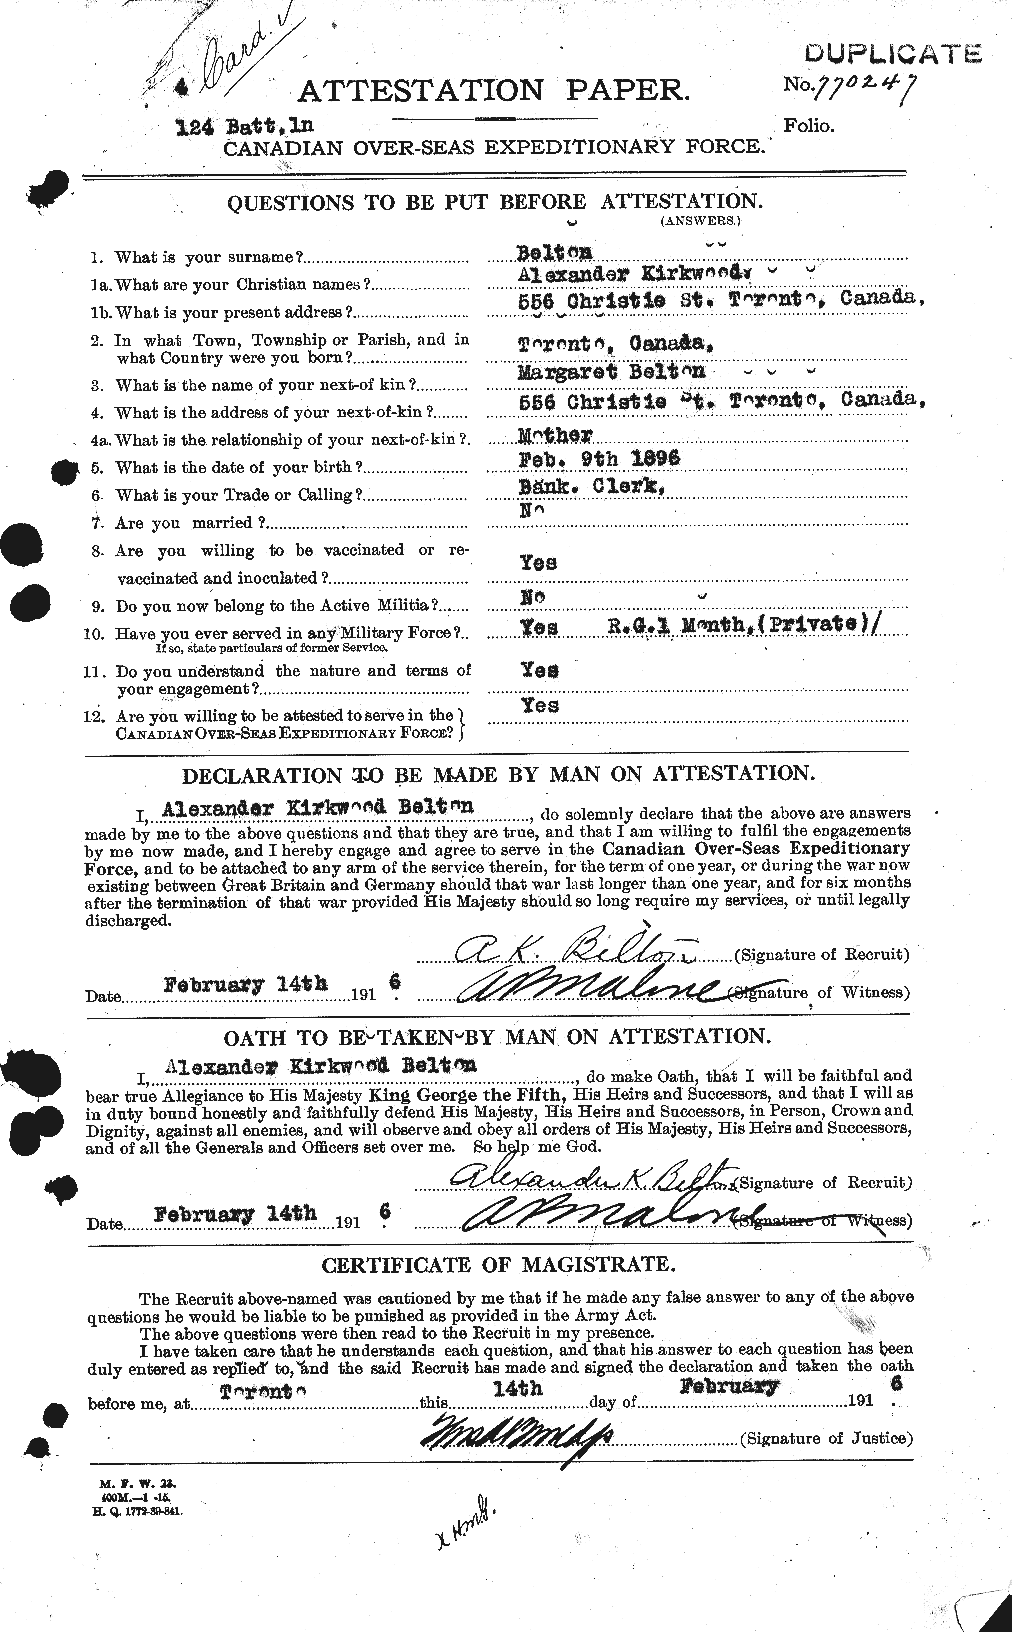 Dossiers du Personnel de la Première Guerre mondiale - CEC 233648a